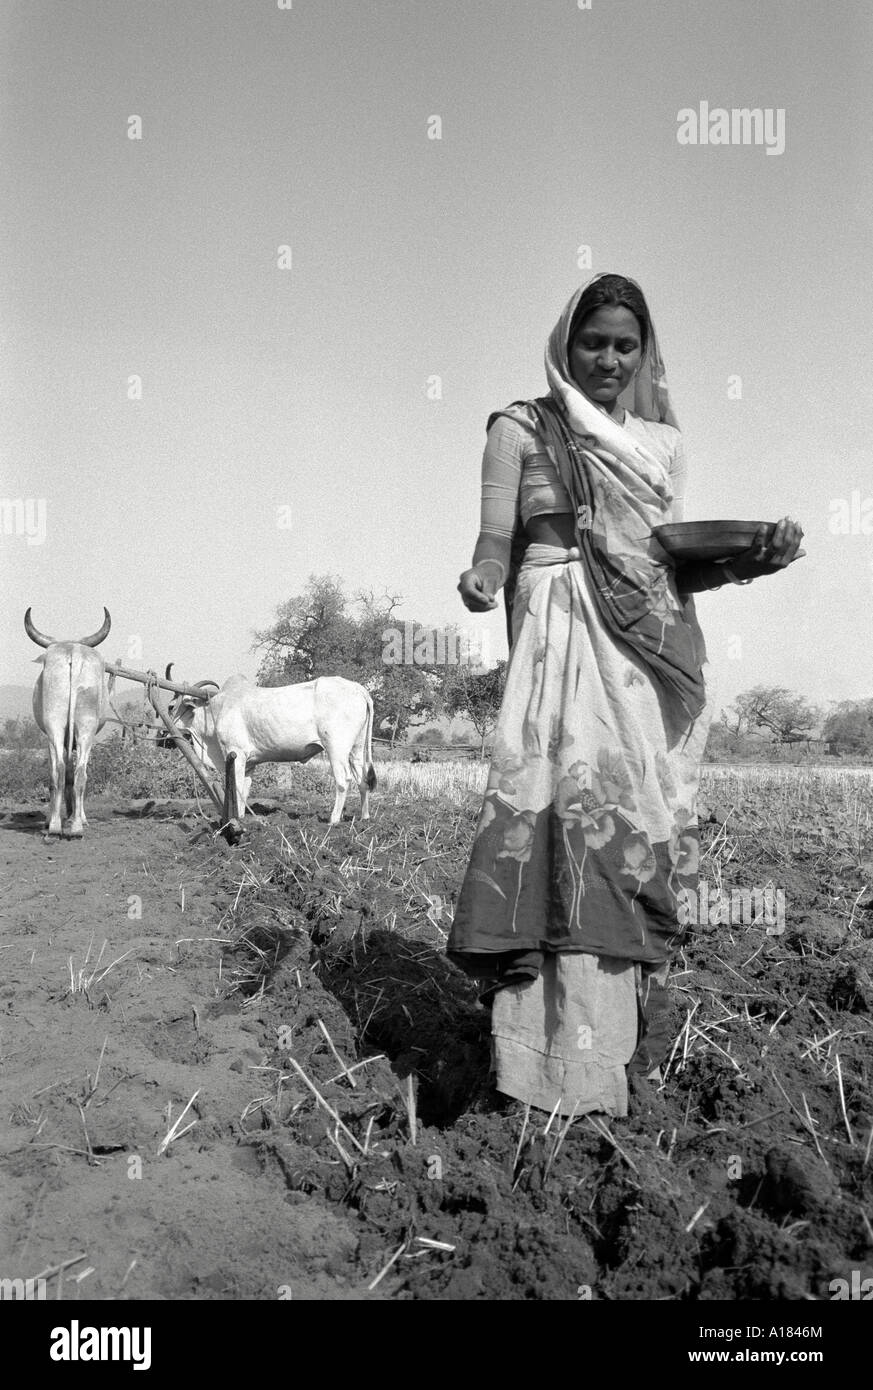 S/W-Porträt einer weiblichen Landarbeiterin, die in einem gepflügten Feld mit schiefen Ochsen in der Ferne eine Getreideernte sät. Gujarat, Indien Stockfoto